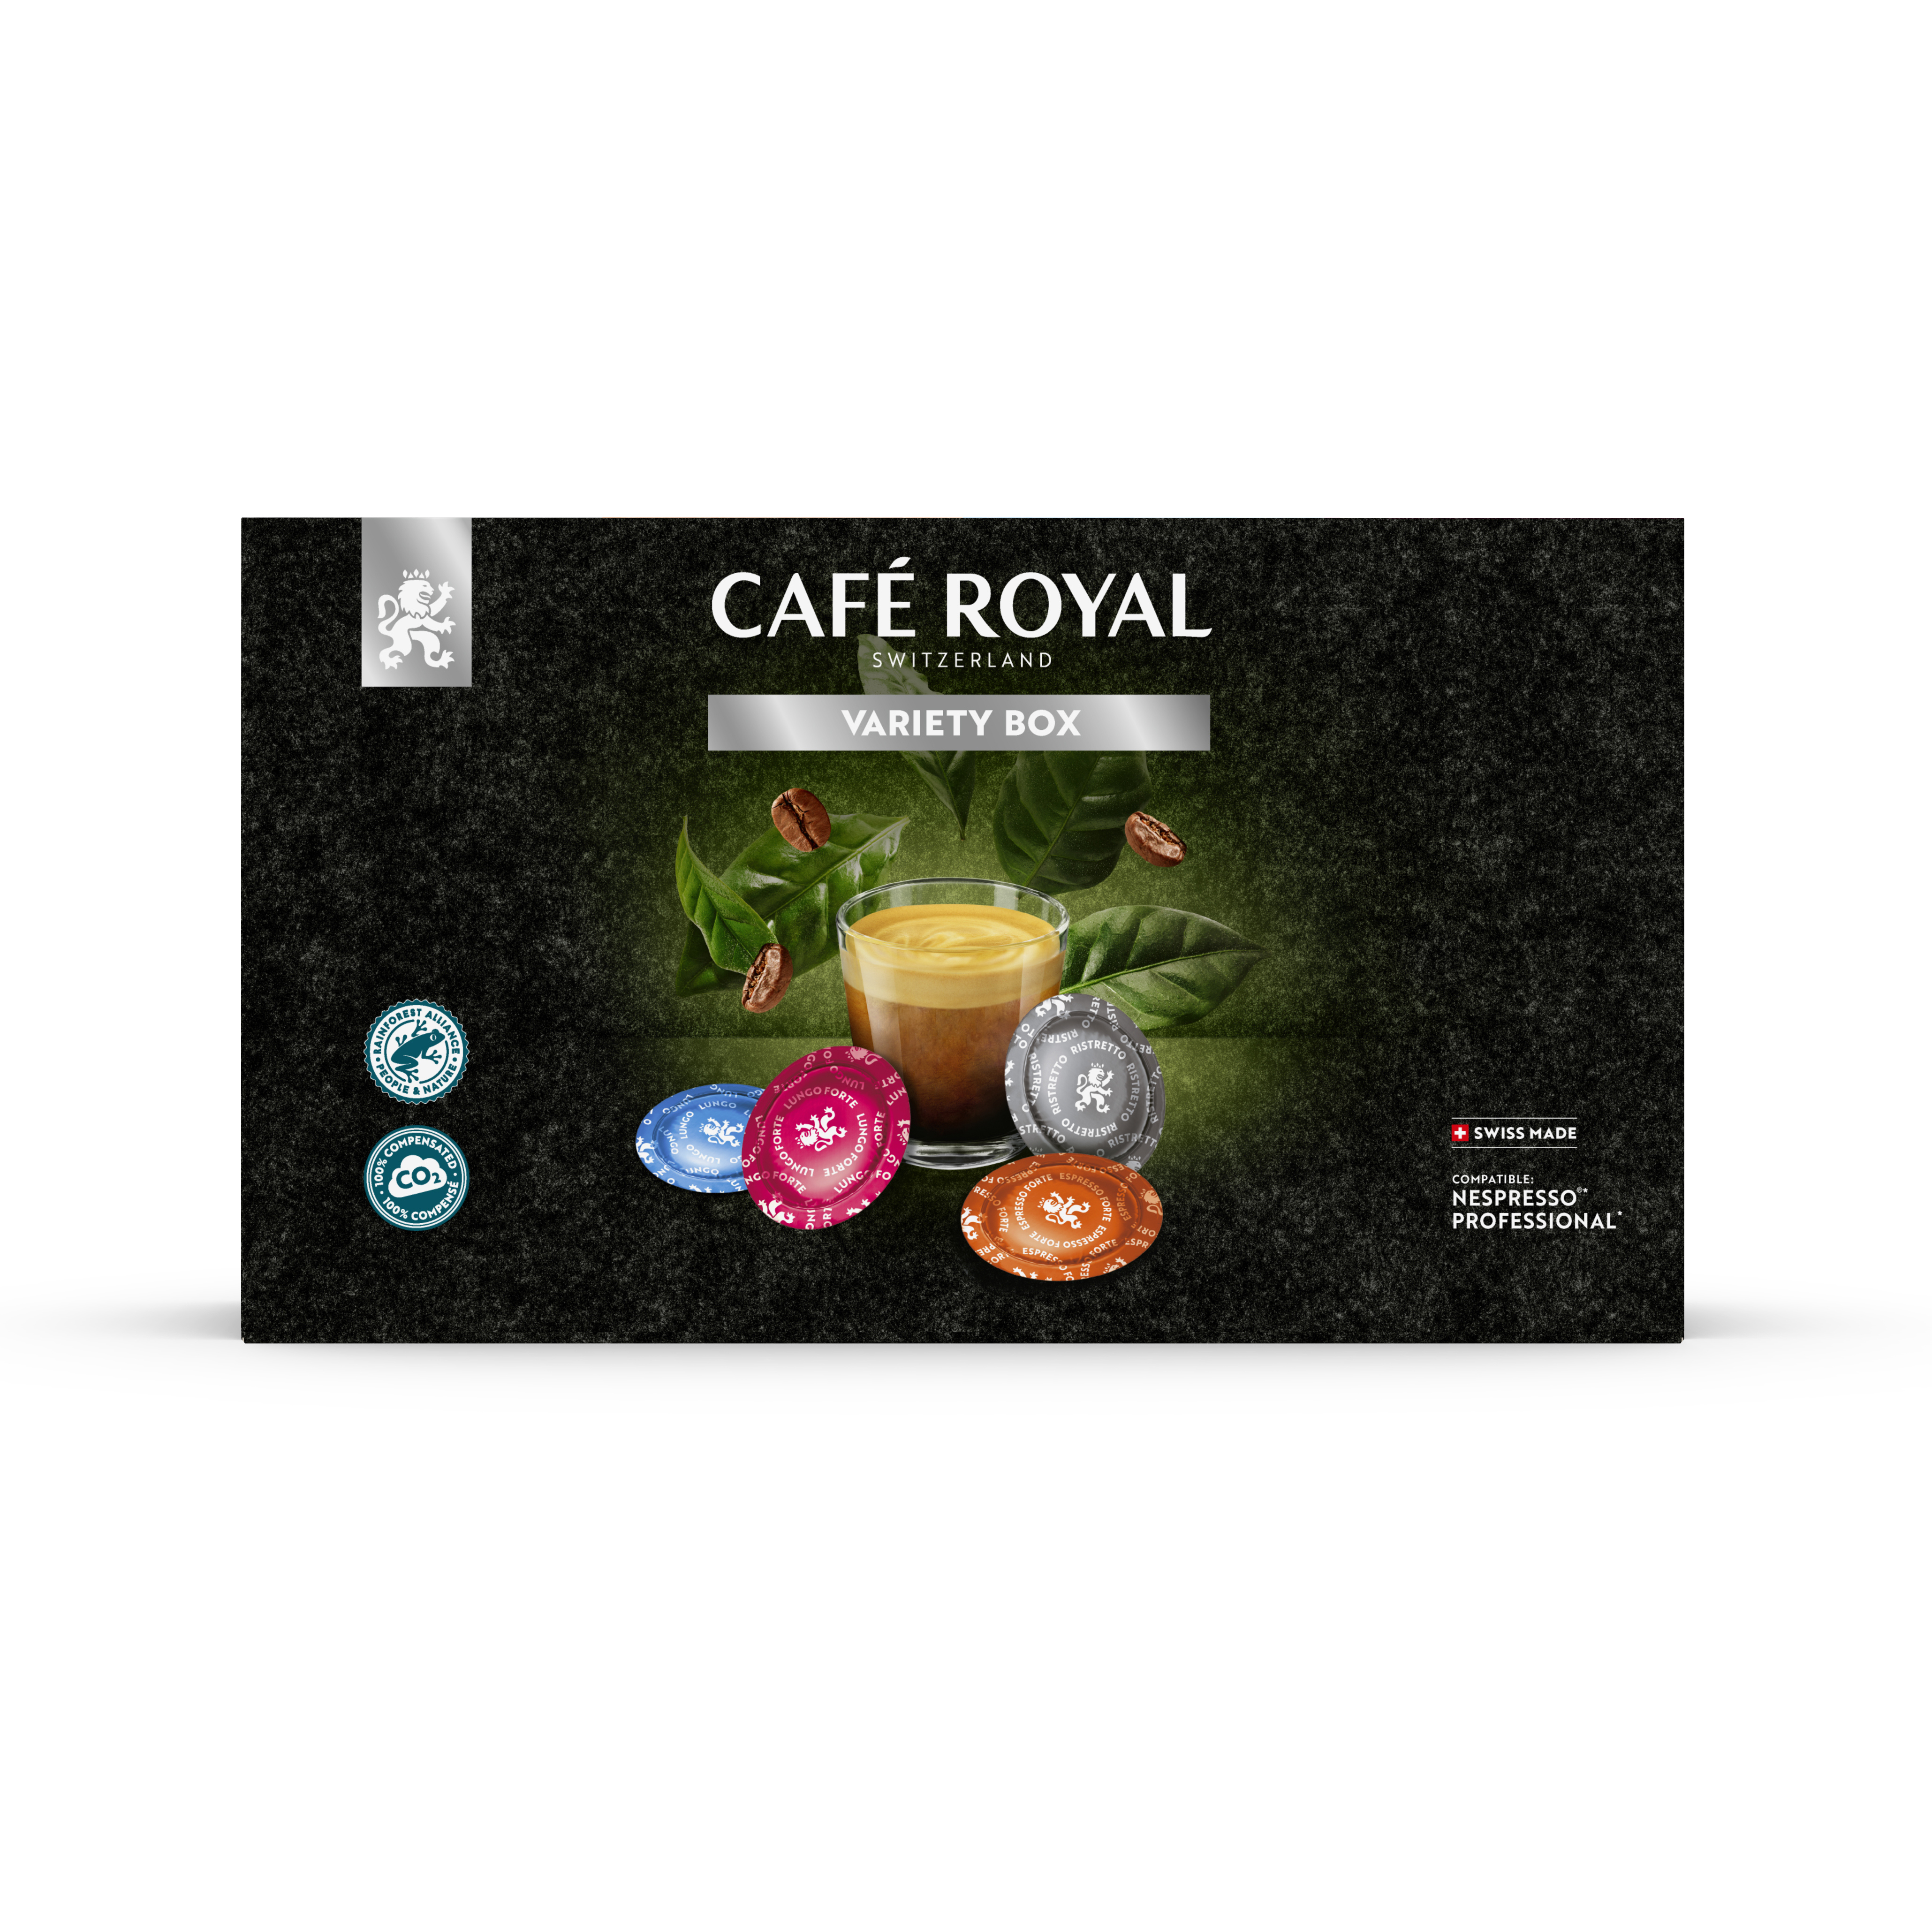 CAFE ROYAL Variety Box 10198815 40 pcs.